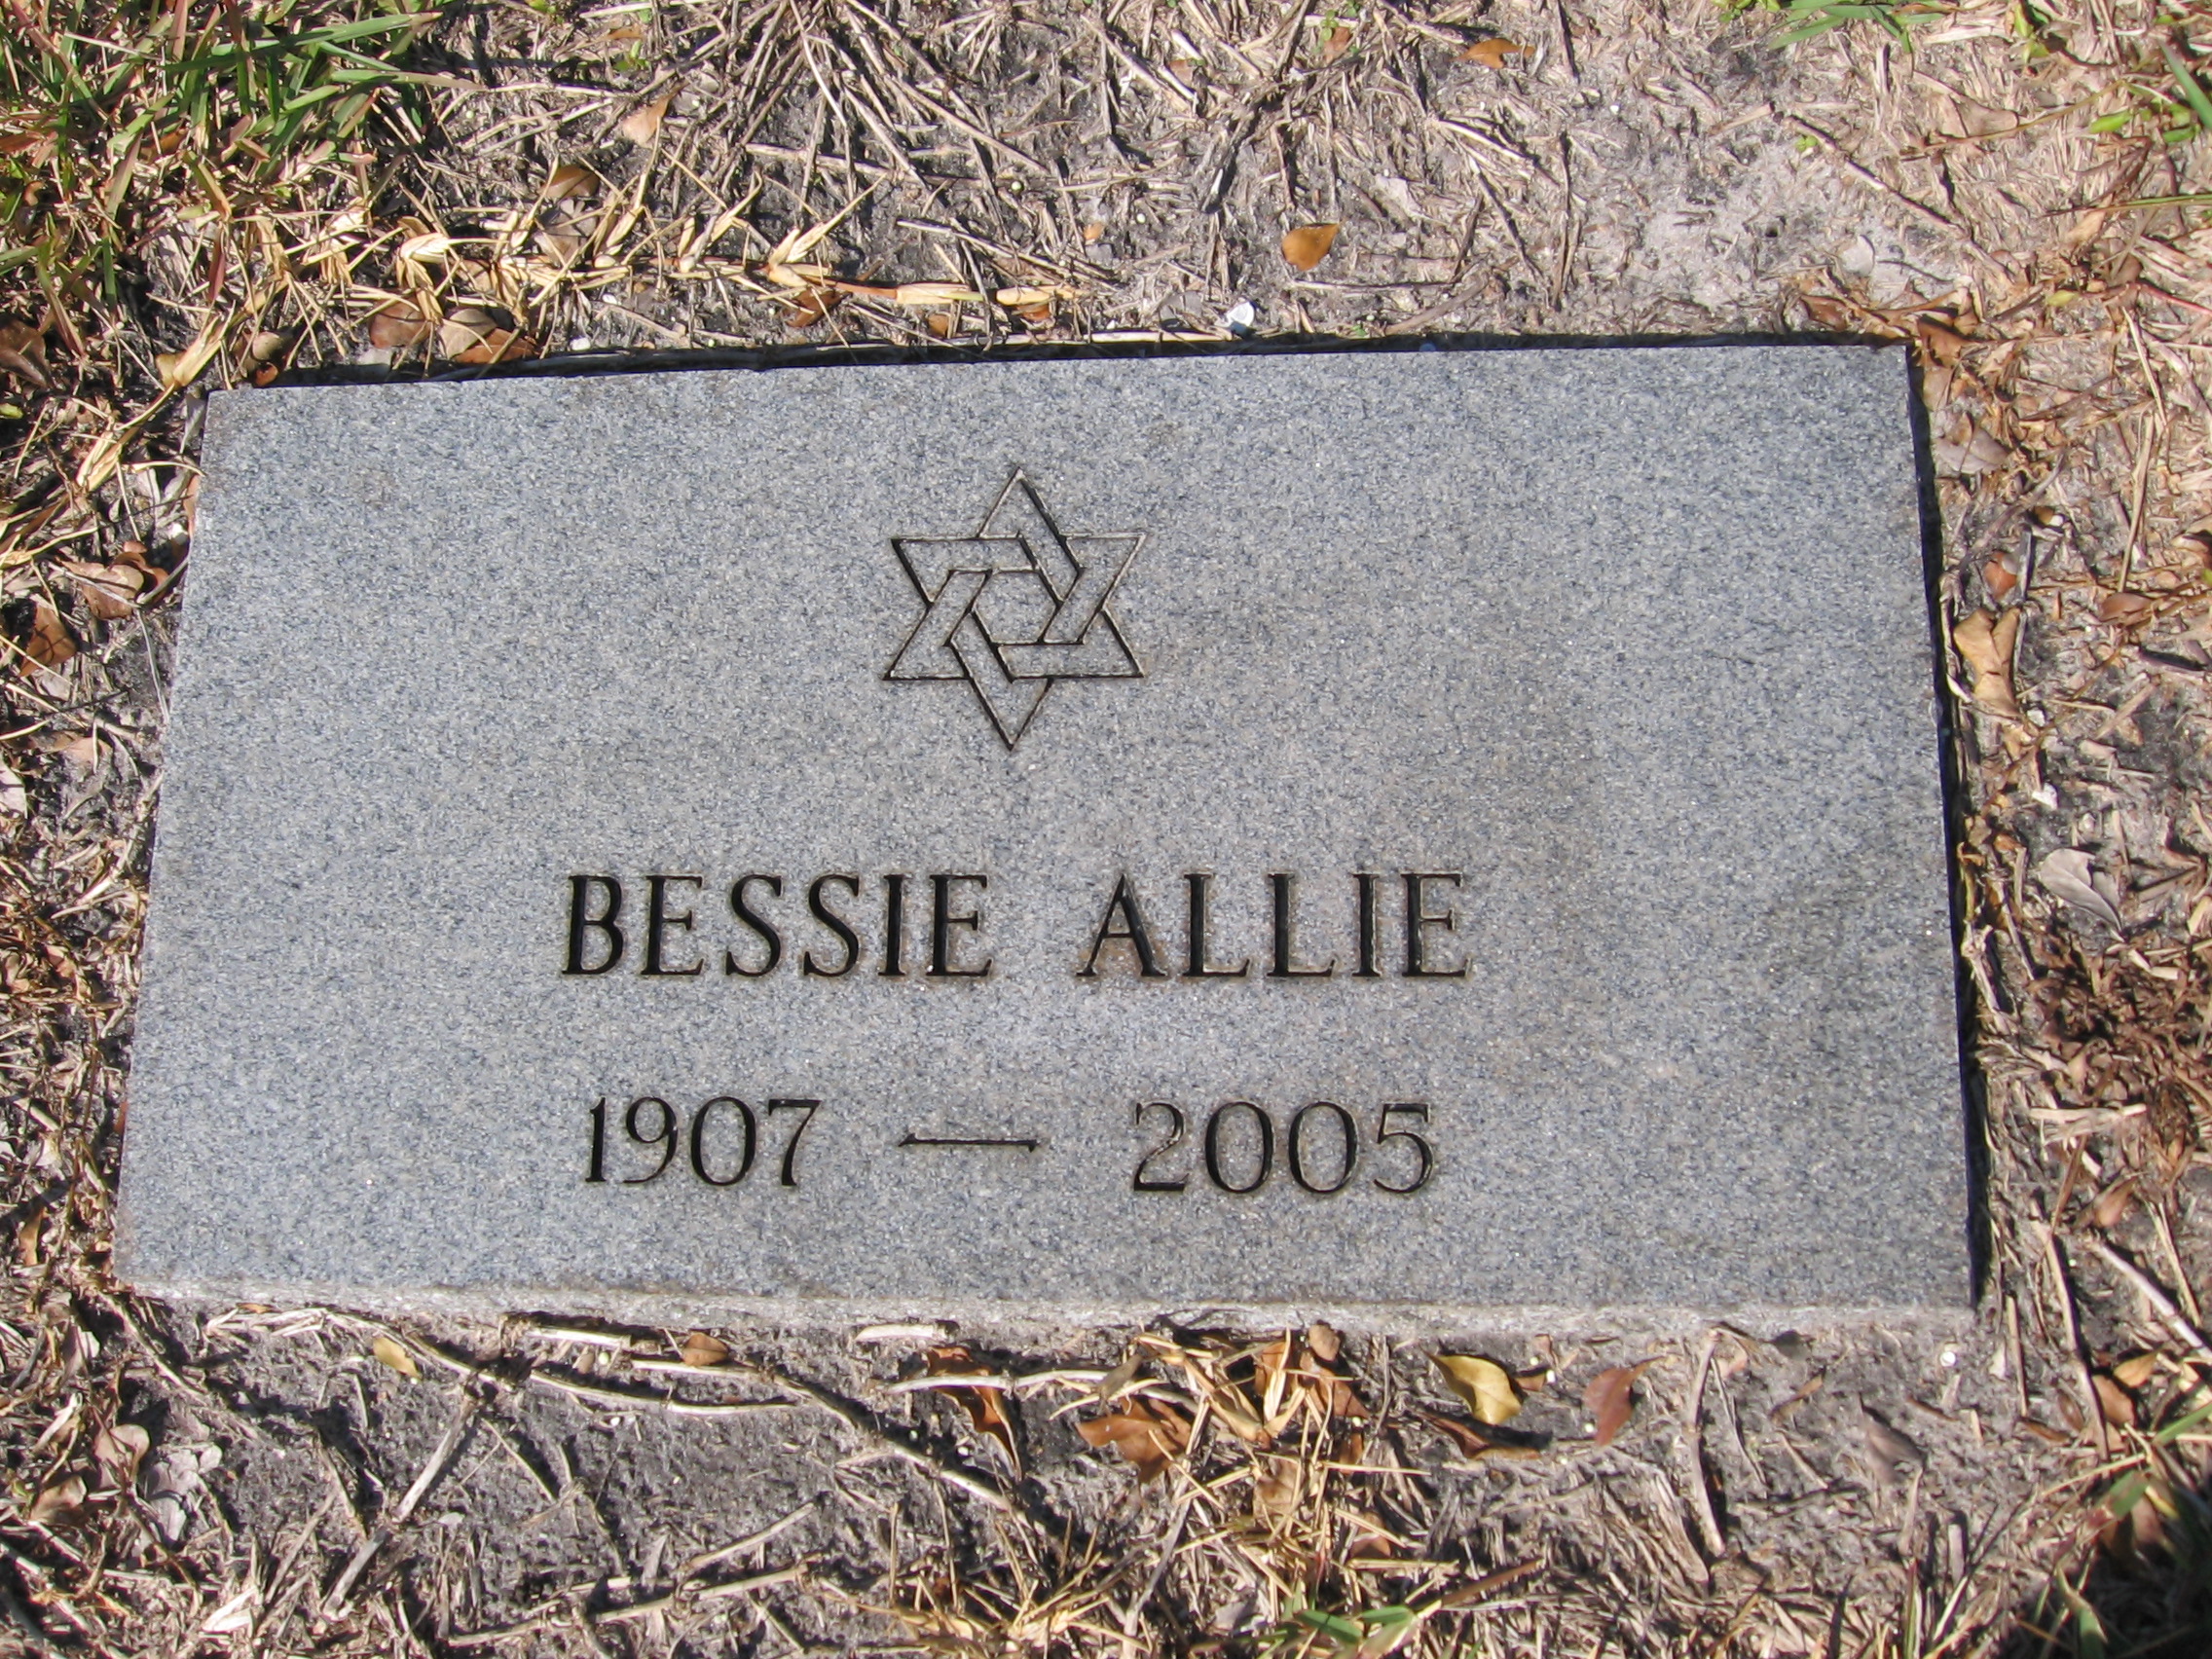 Bessie Allie